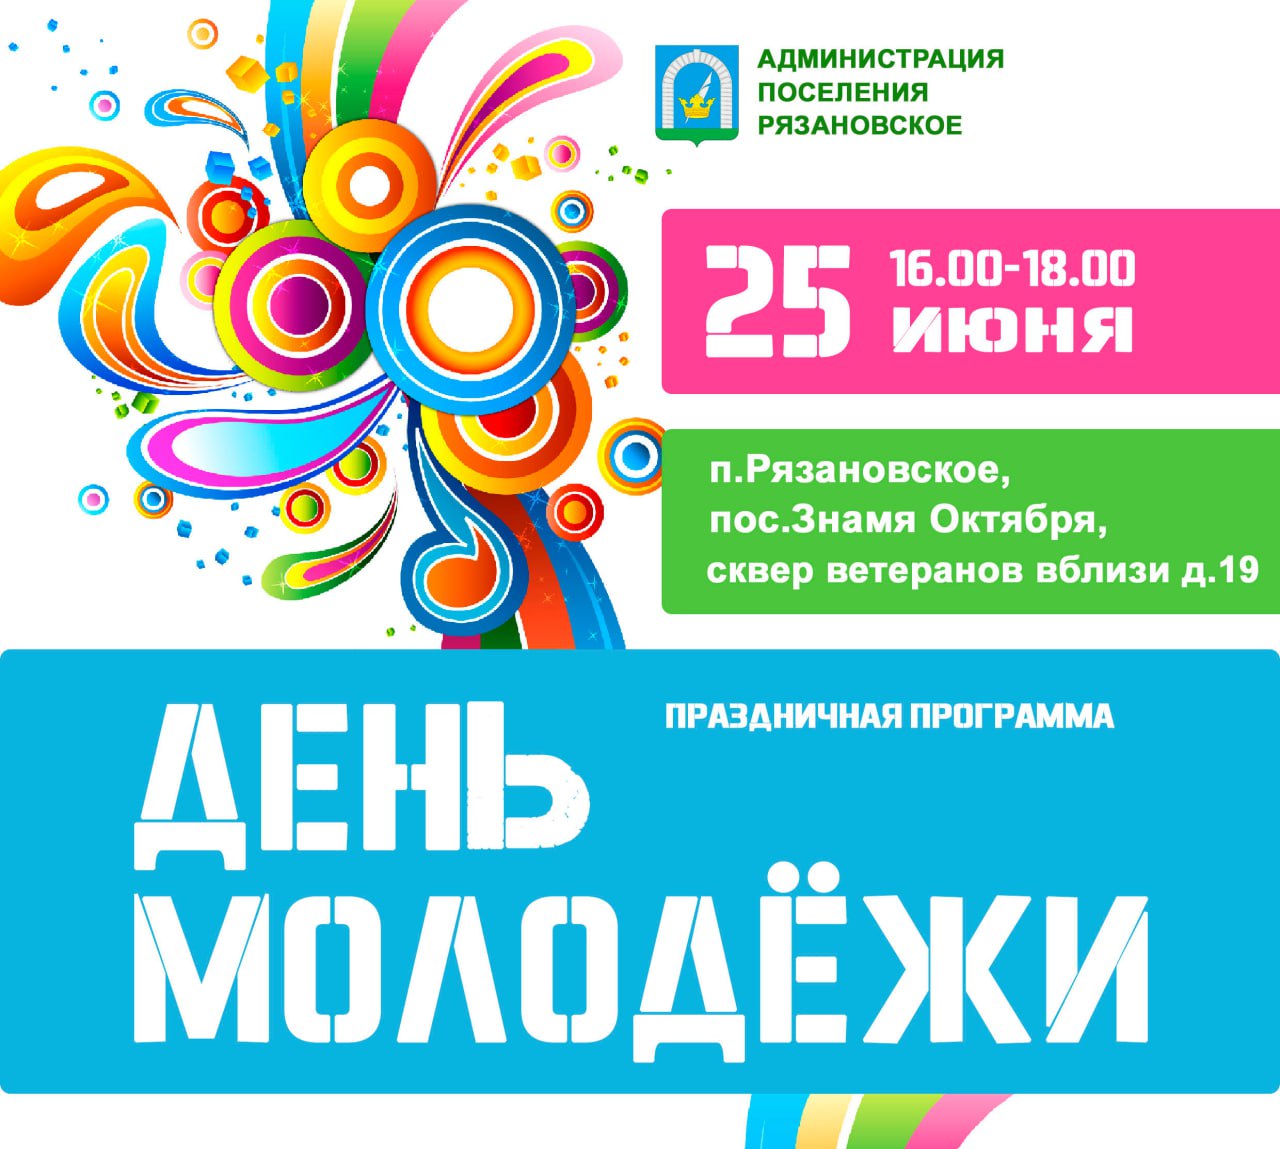 День молодежи: праздничное мероприятие пройдет в поселении Рязановское